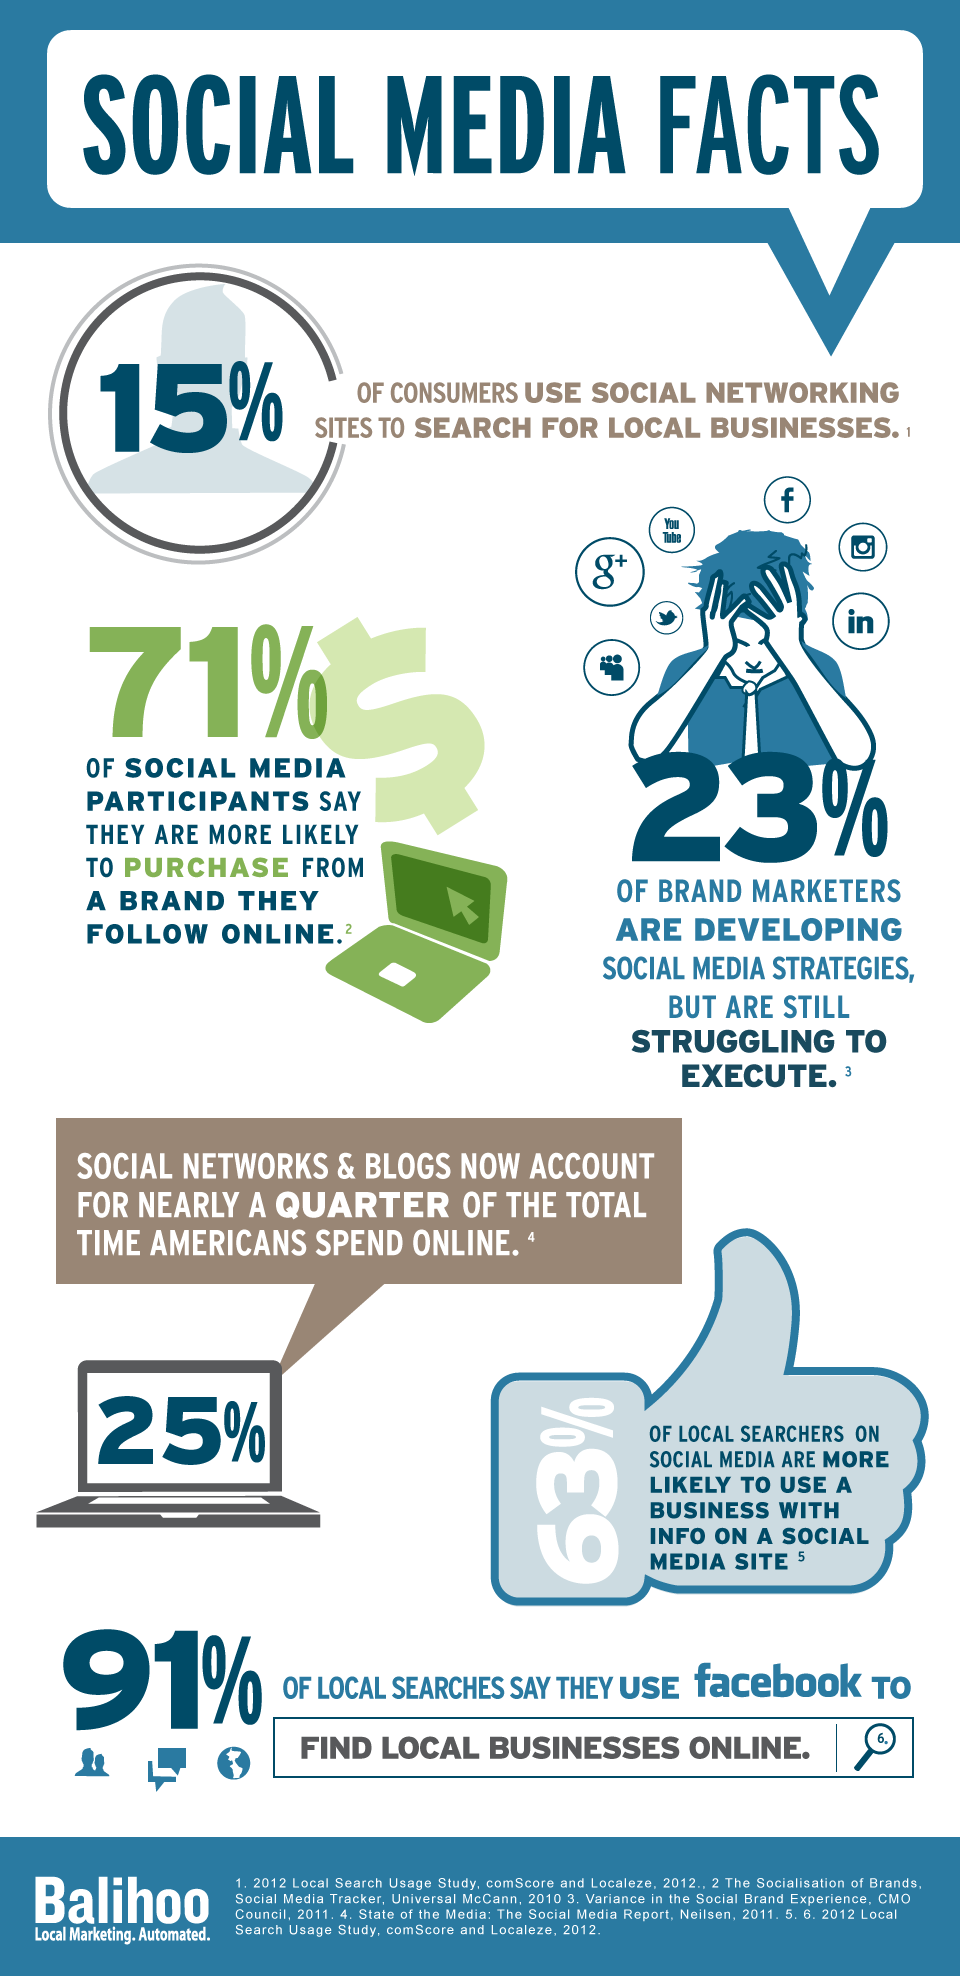 Social Media Facts Visual.ly